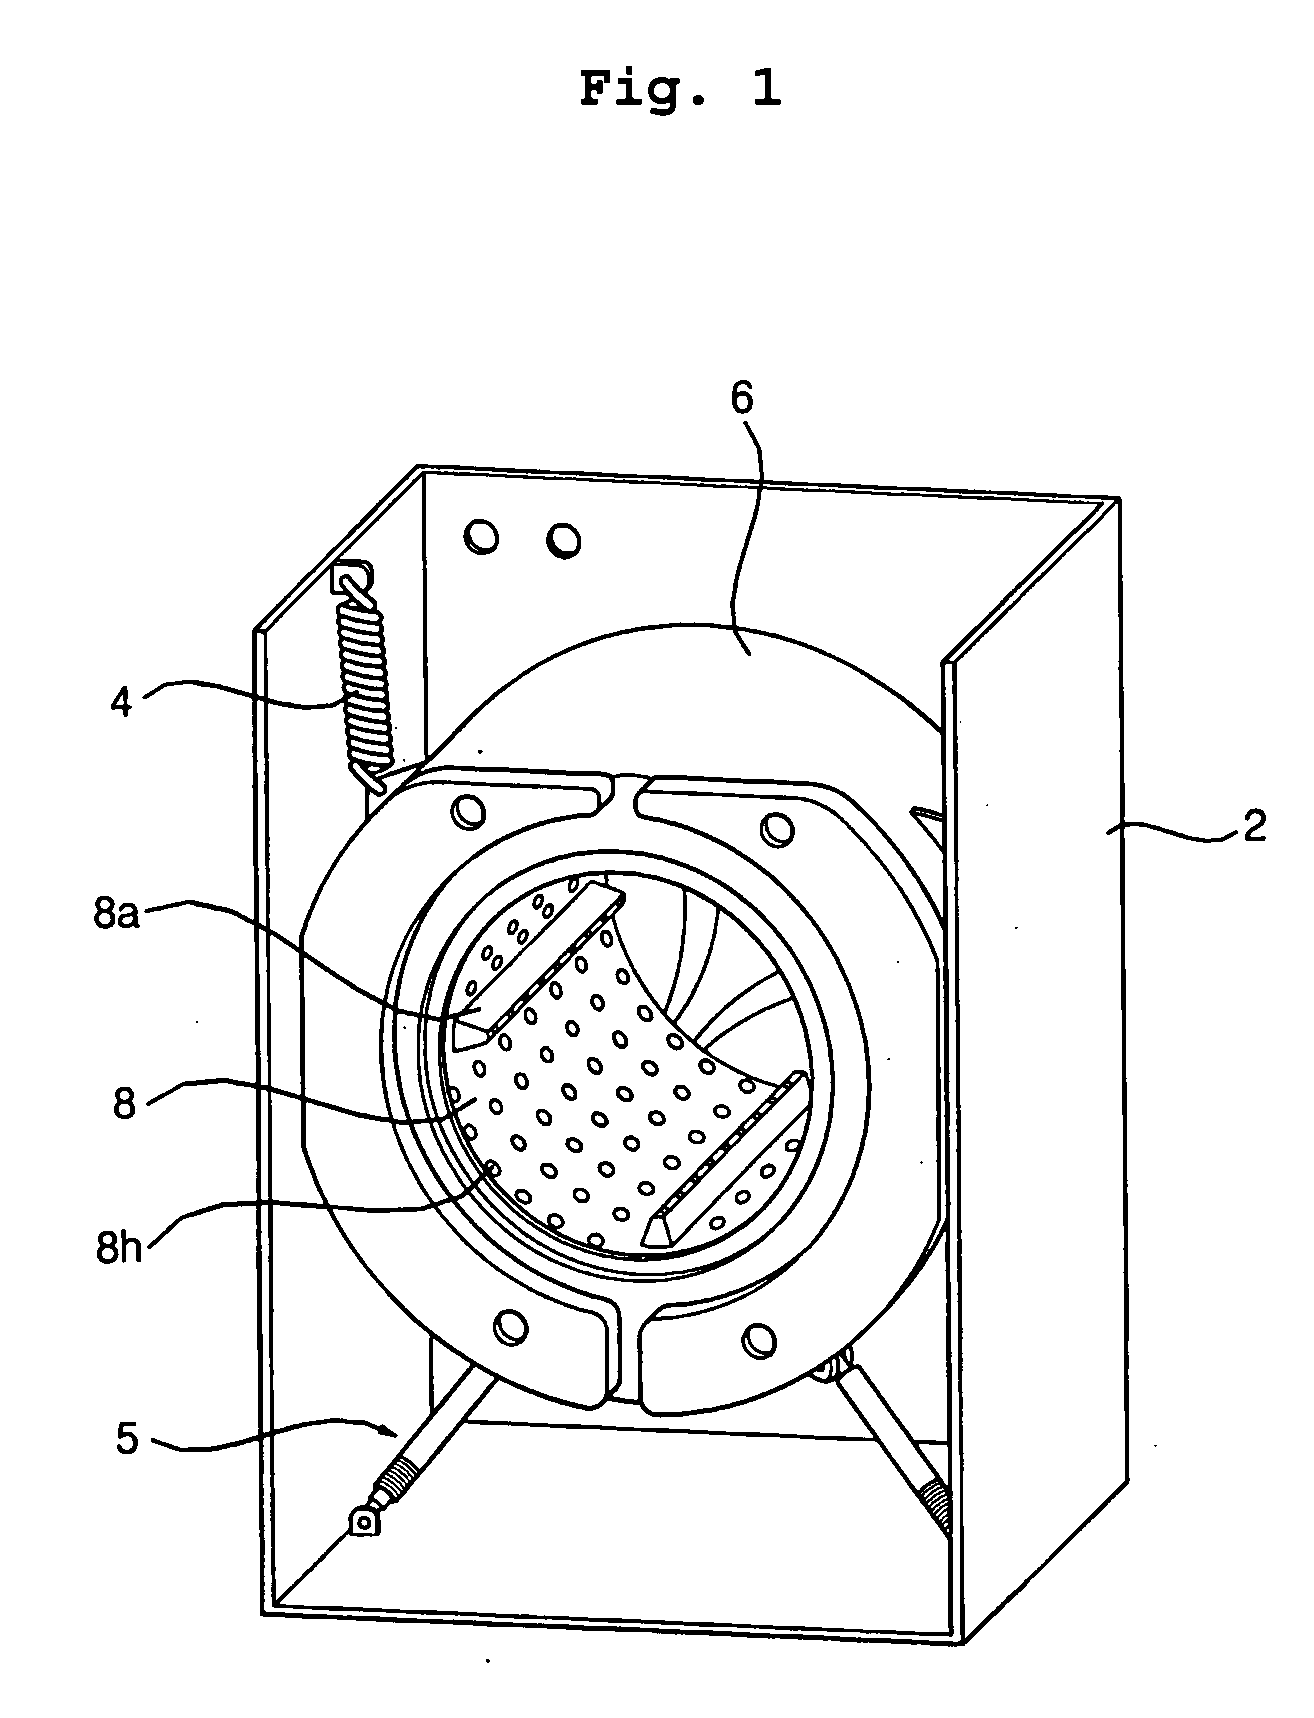 Steam jet drum washing machine